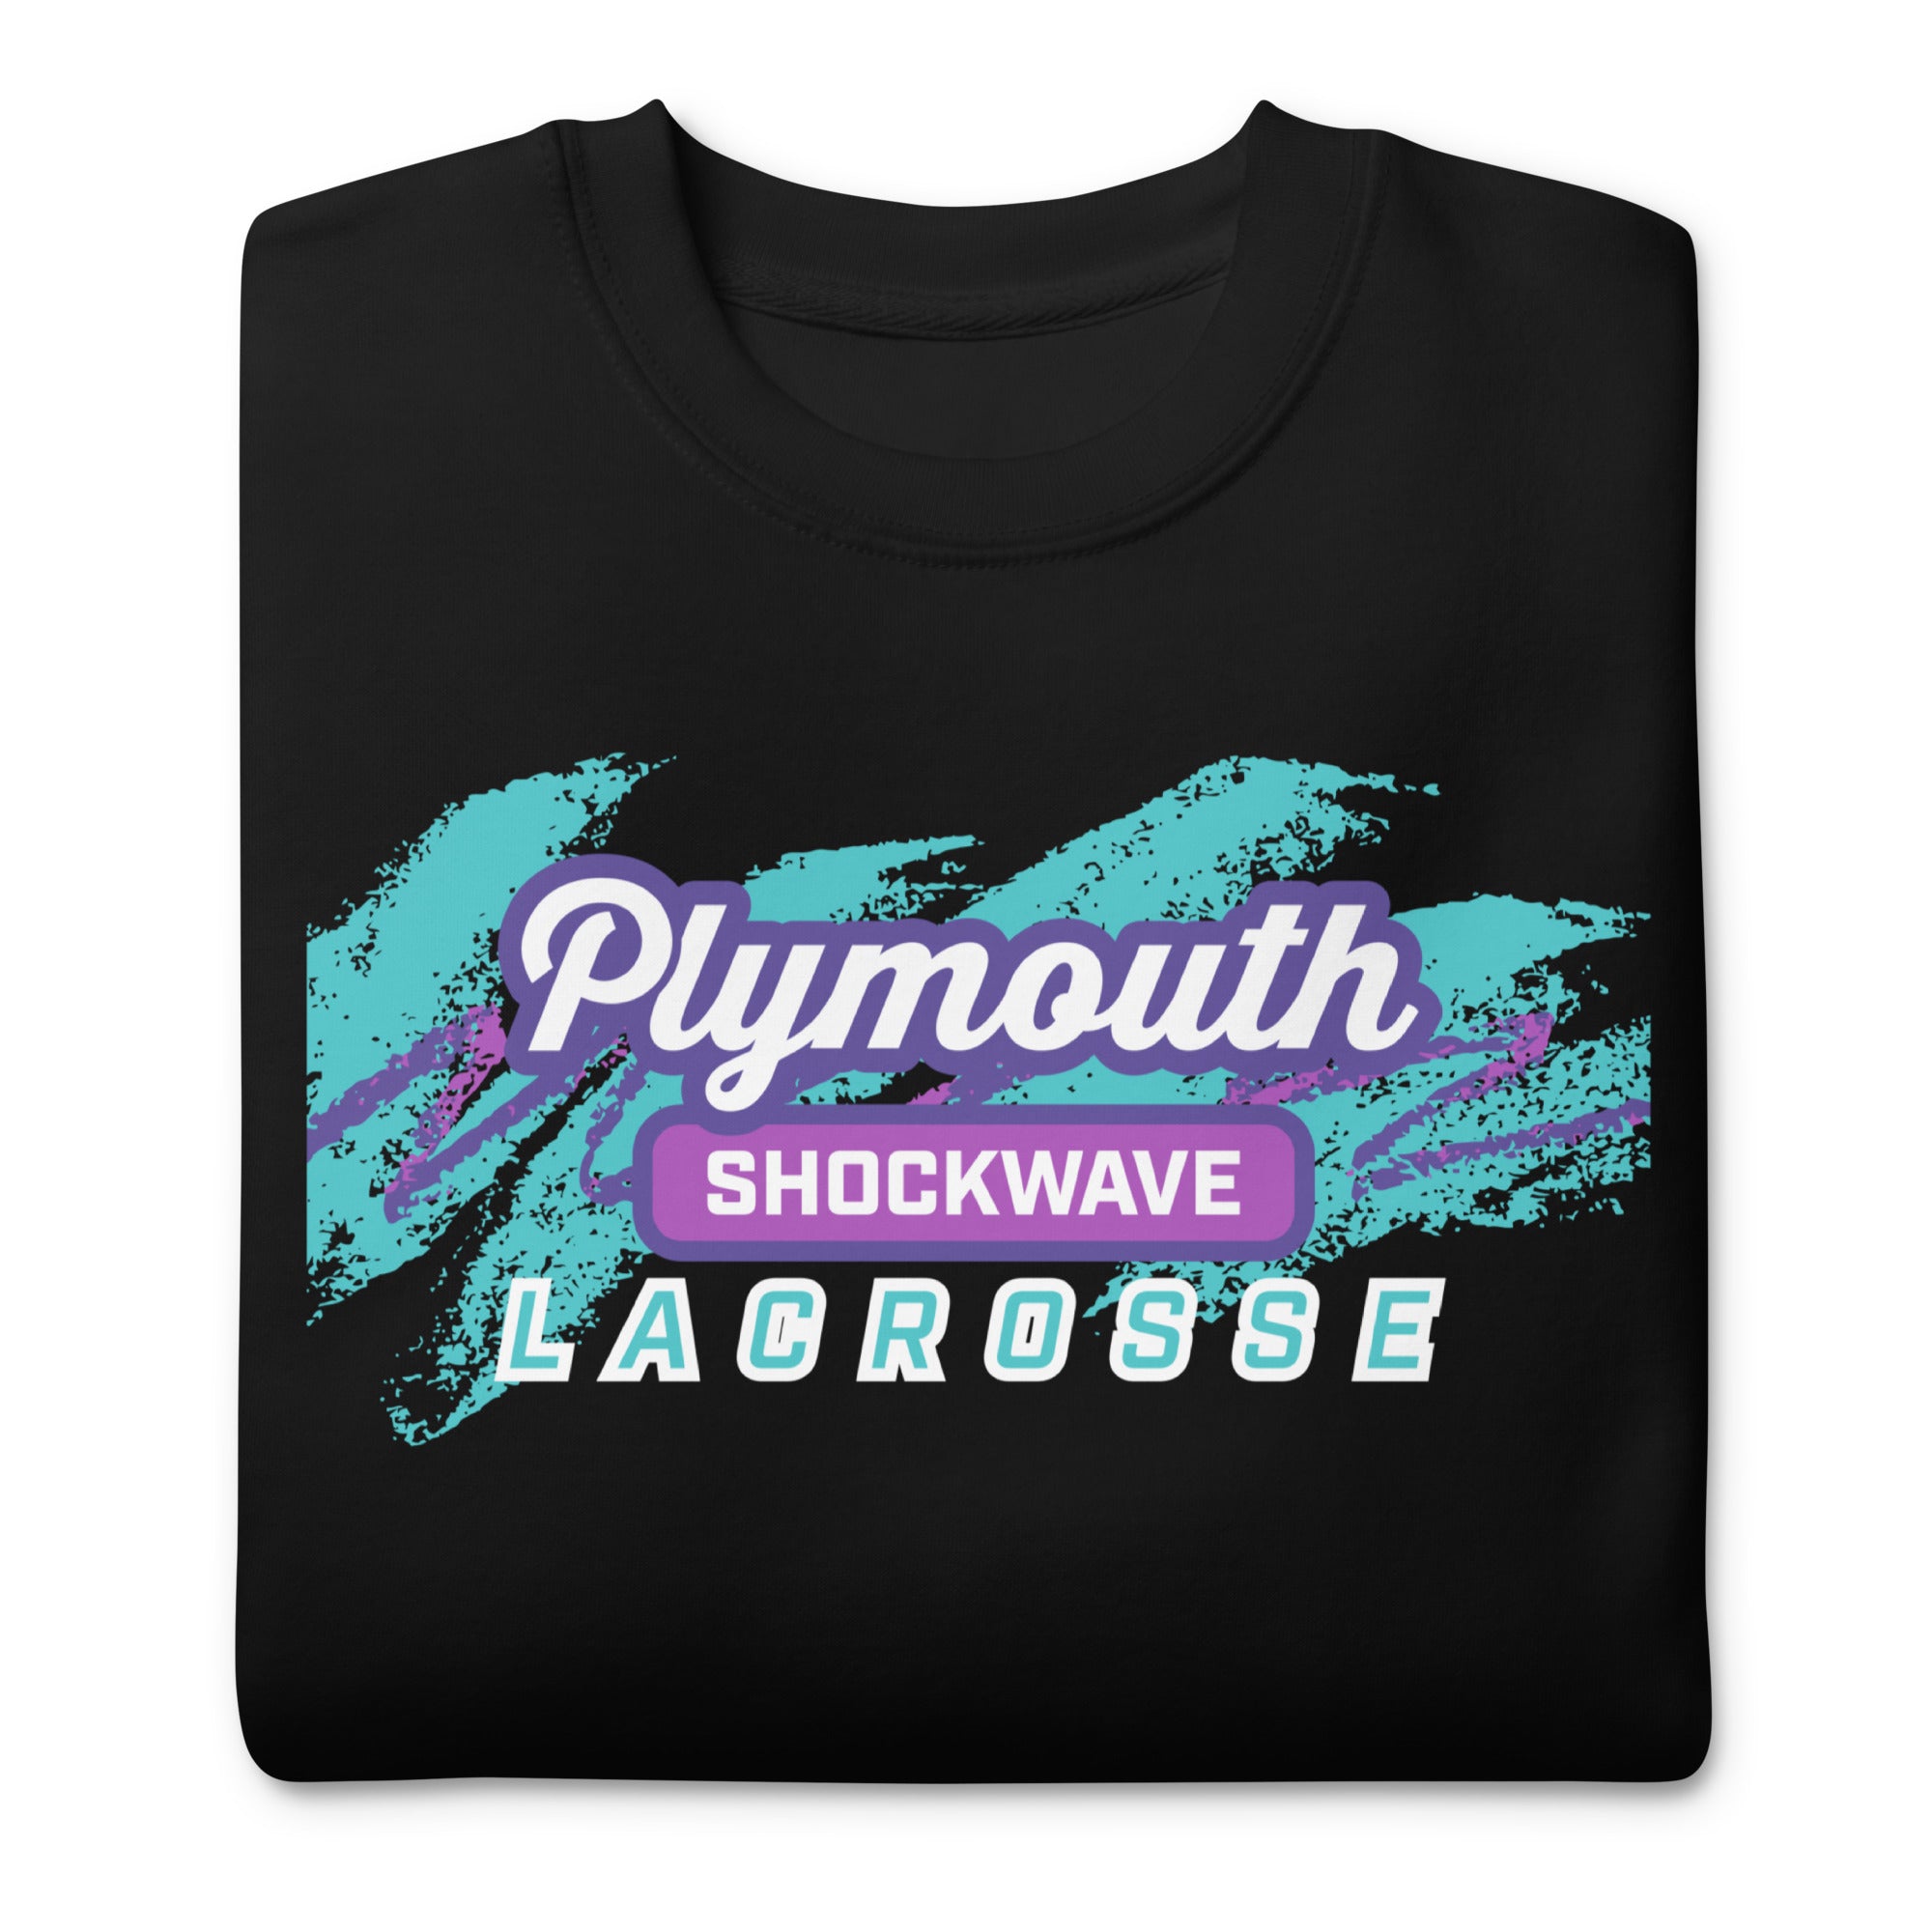 Shockwave Unisex Crewneck Sweatshirt